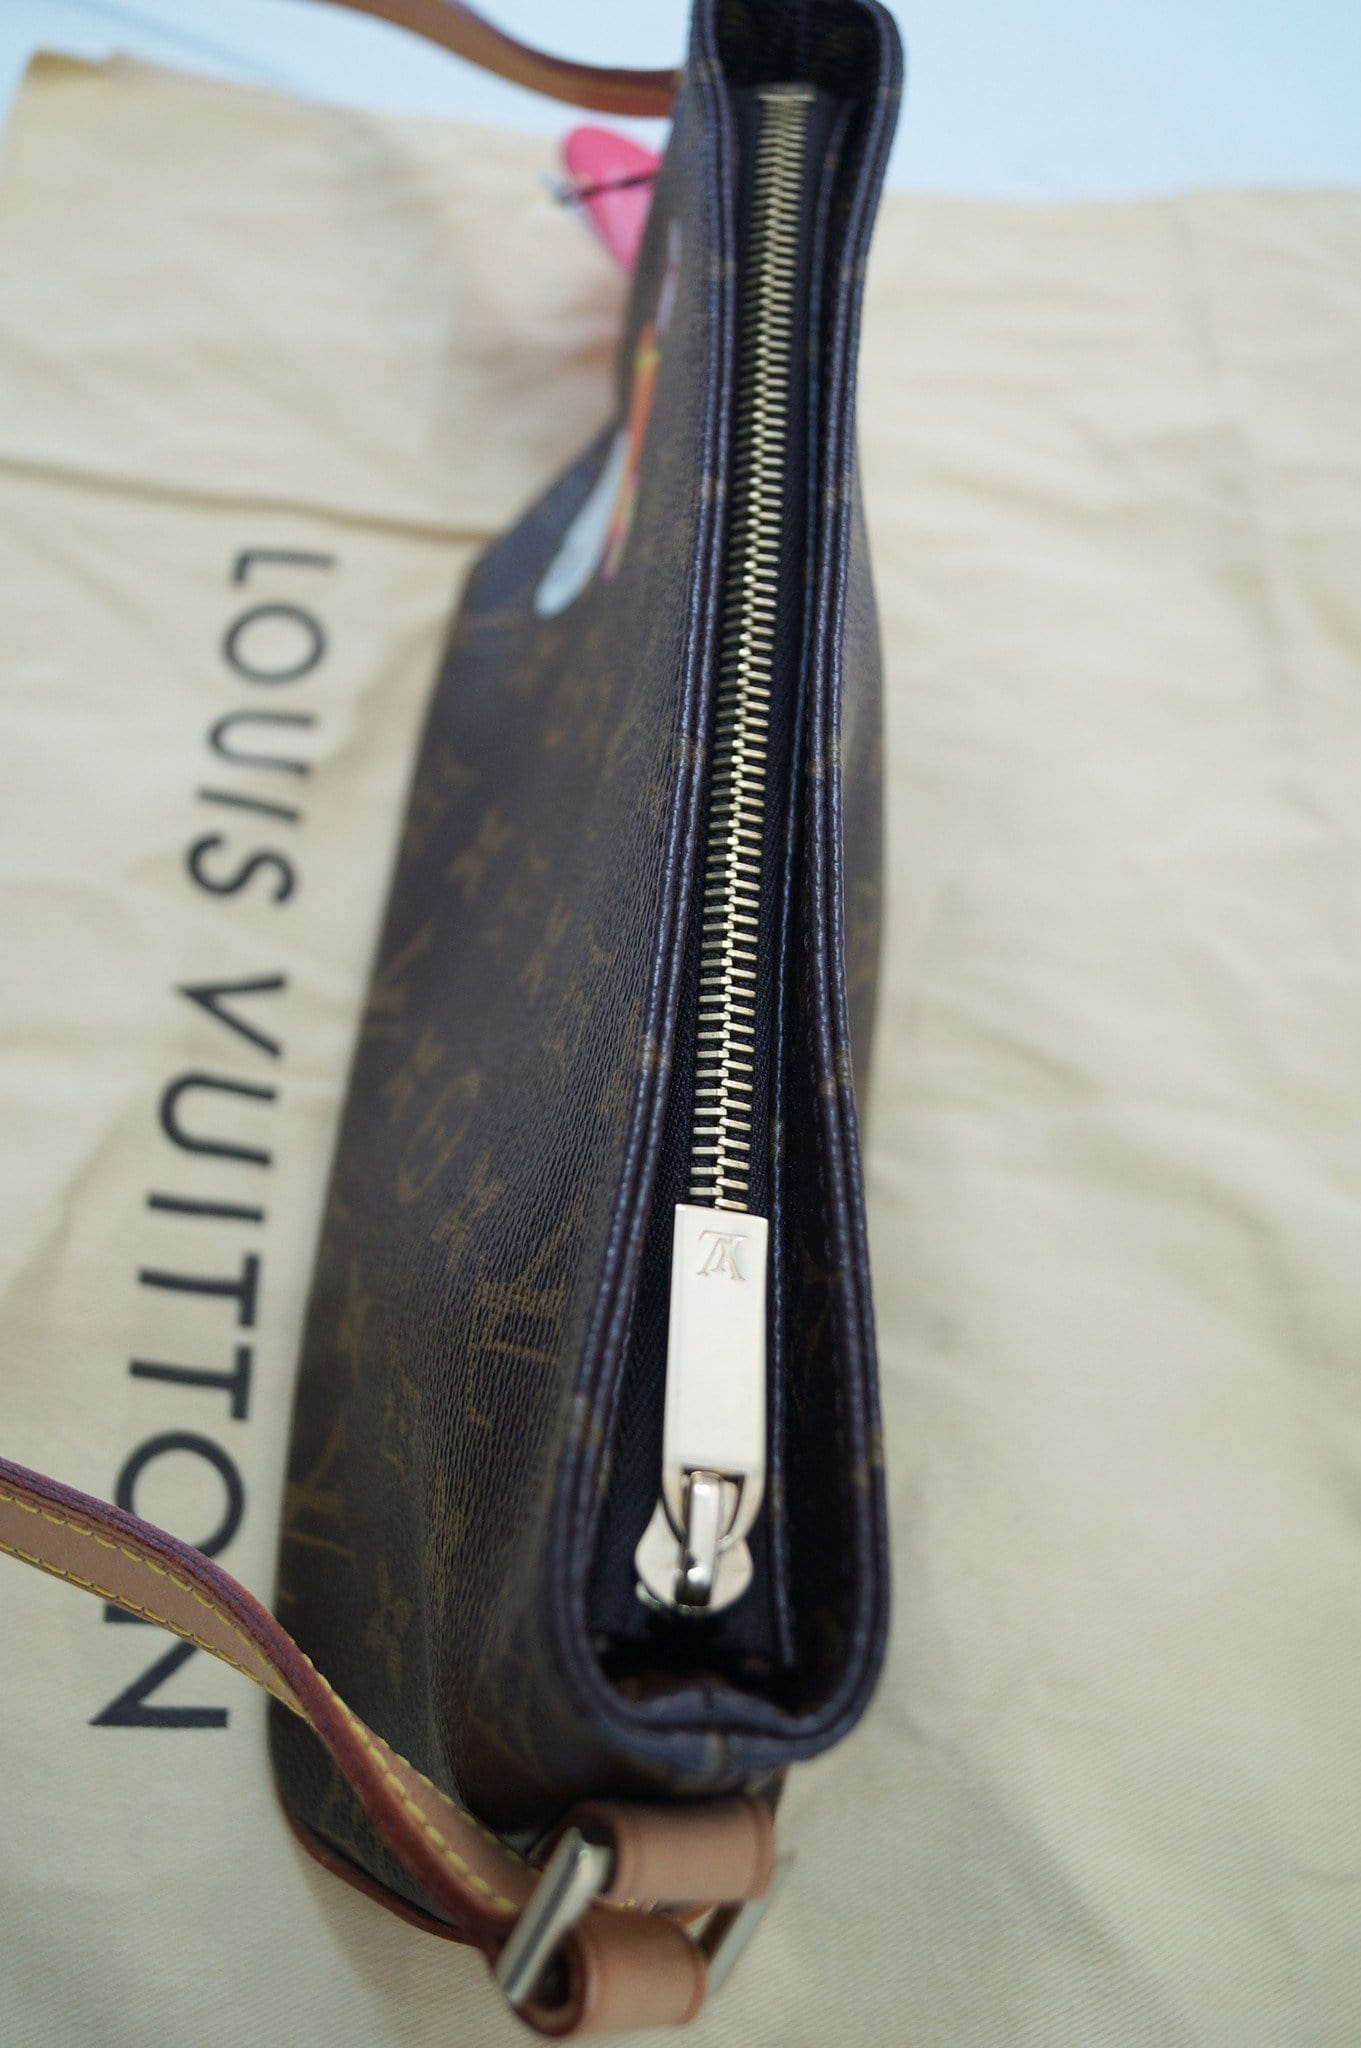 Louis Vuitton Monogram Trotteur – DAC